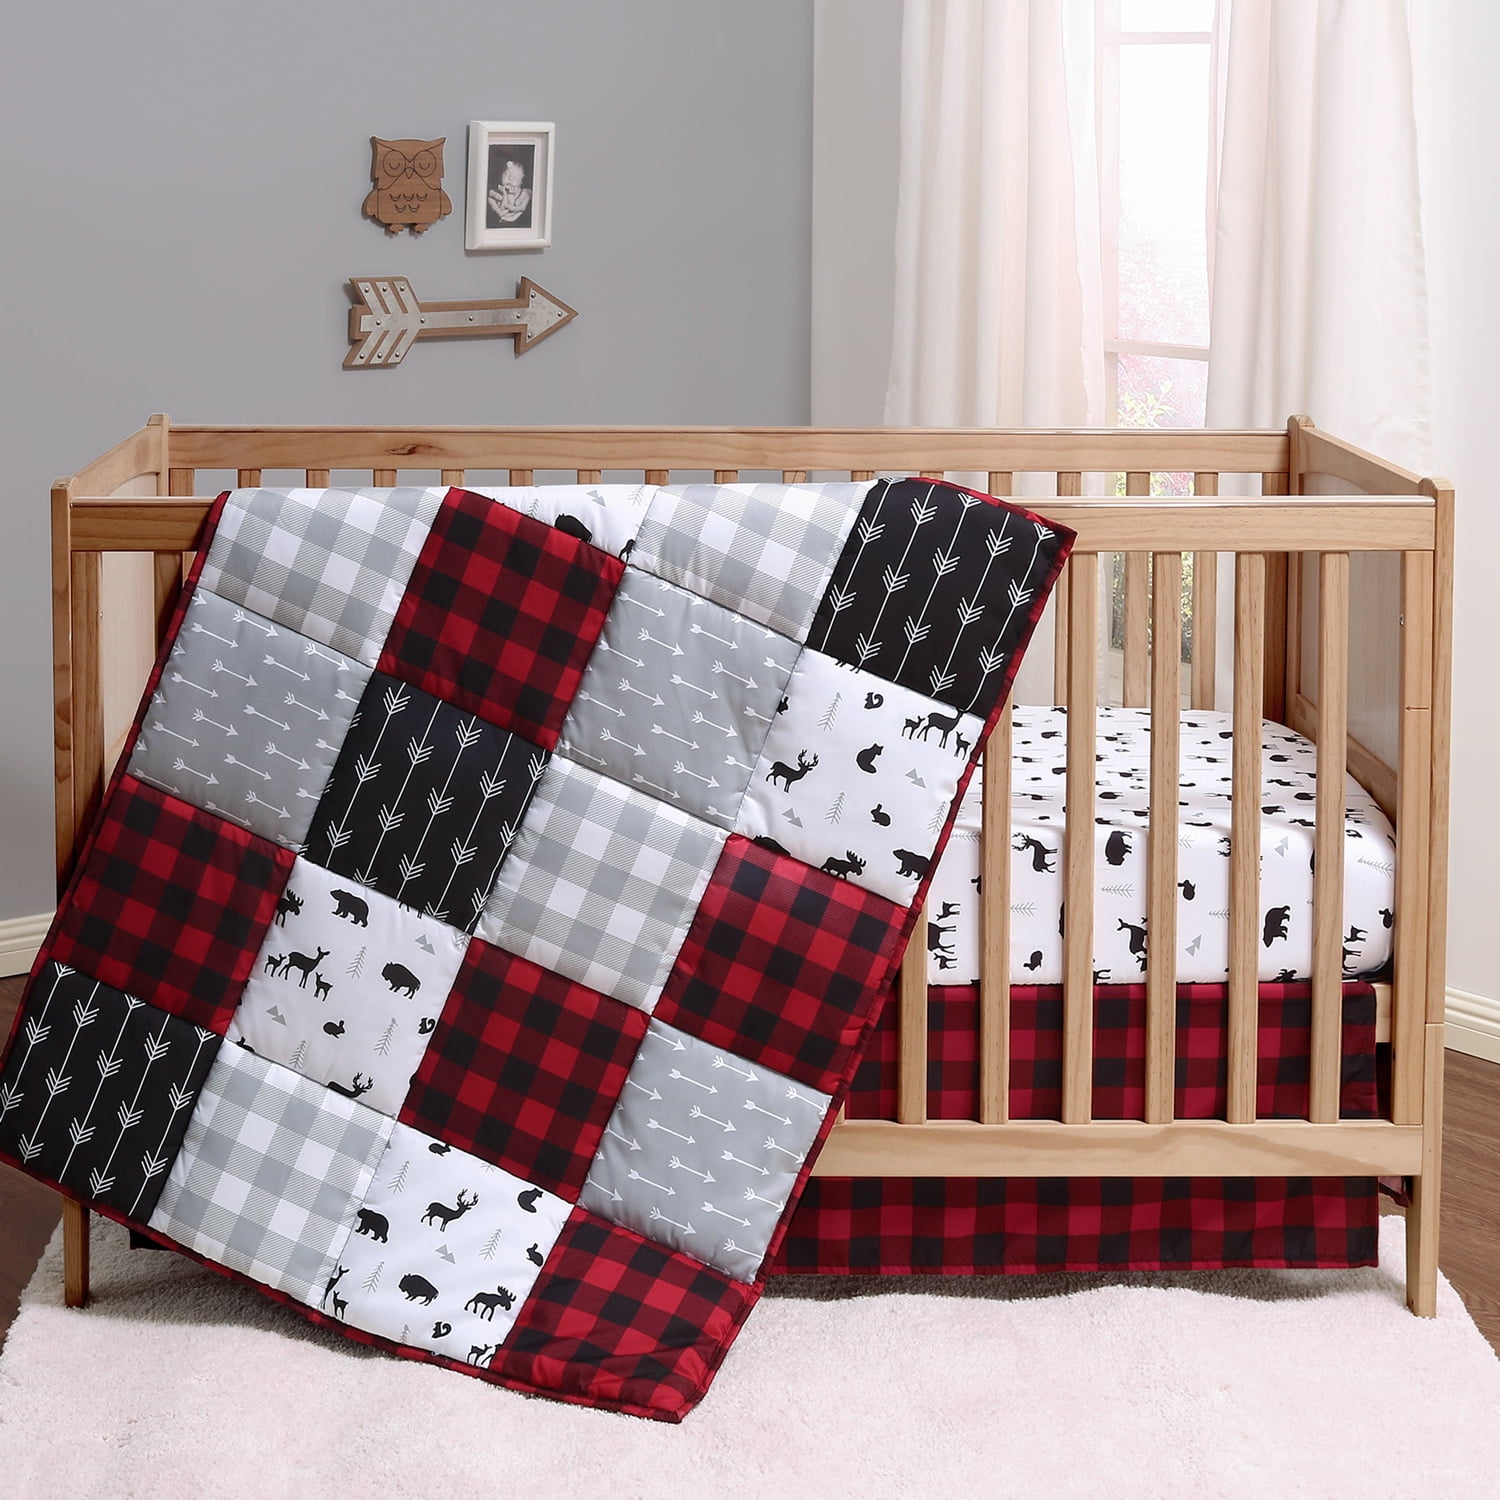 The Peanutshell Buffalo Plaid Crib Bedding Set Crib Comforter, Crib Sheet, Crib Skirt in Black